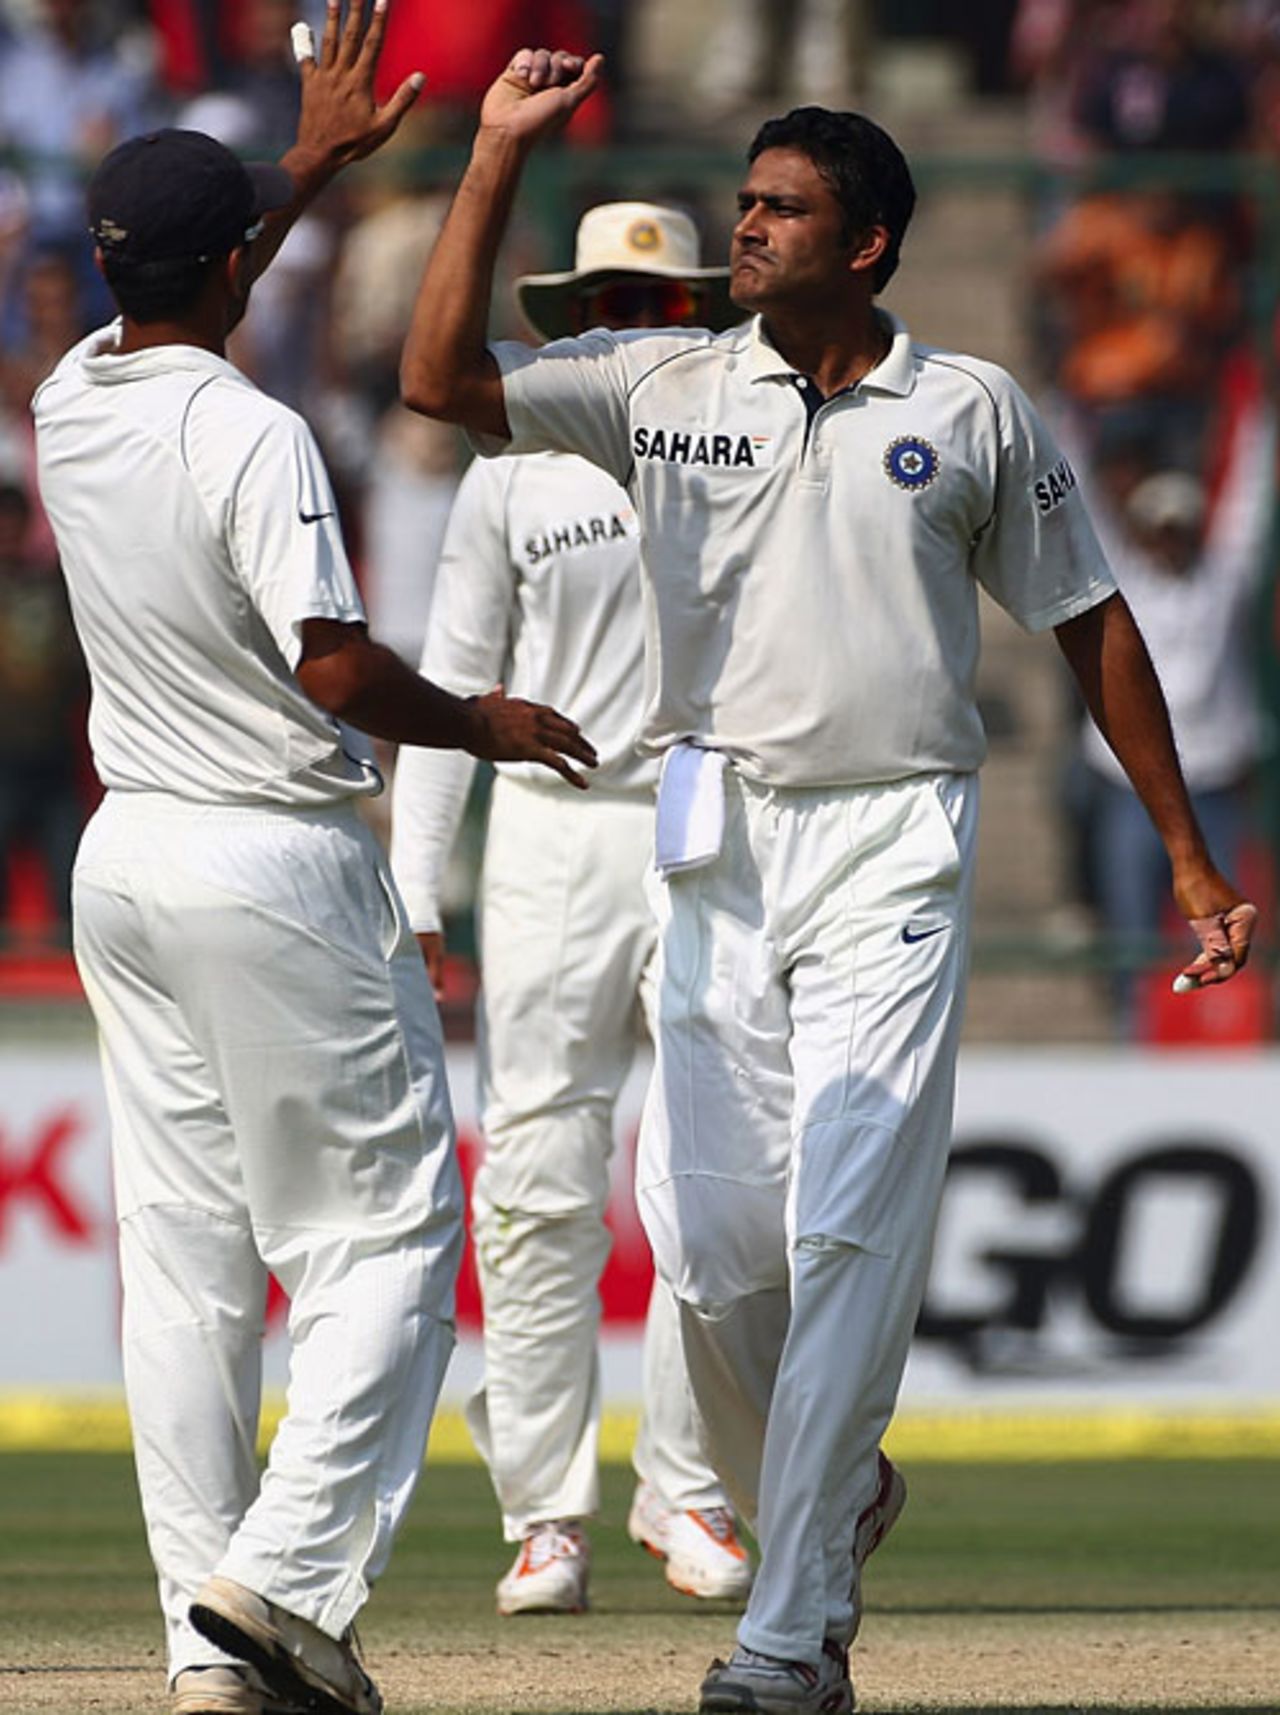 Anil Kumble celebrates the wicket of Brad Haddin, India v Australia, 3rd Test, Delhi, 4th day, November 1, 2008